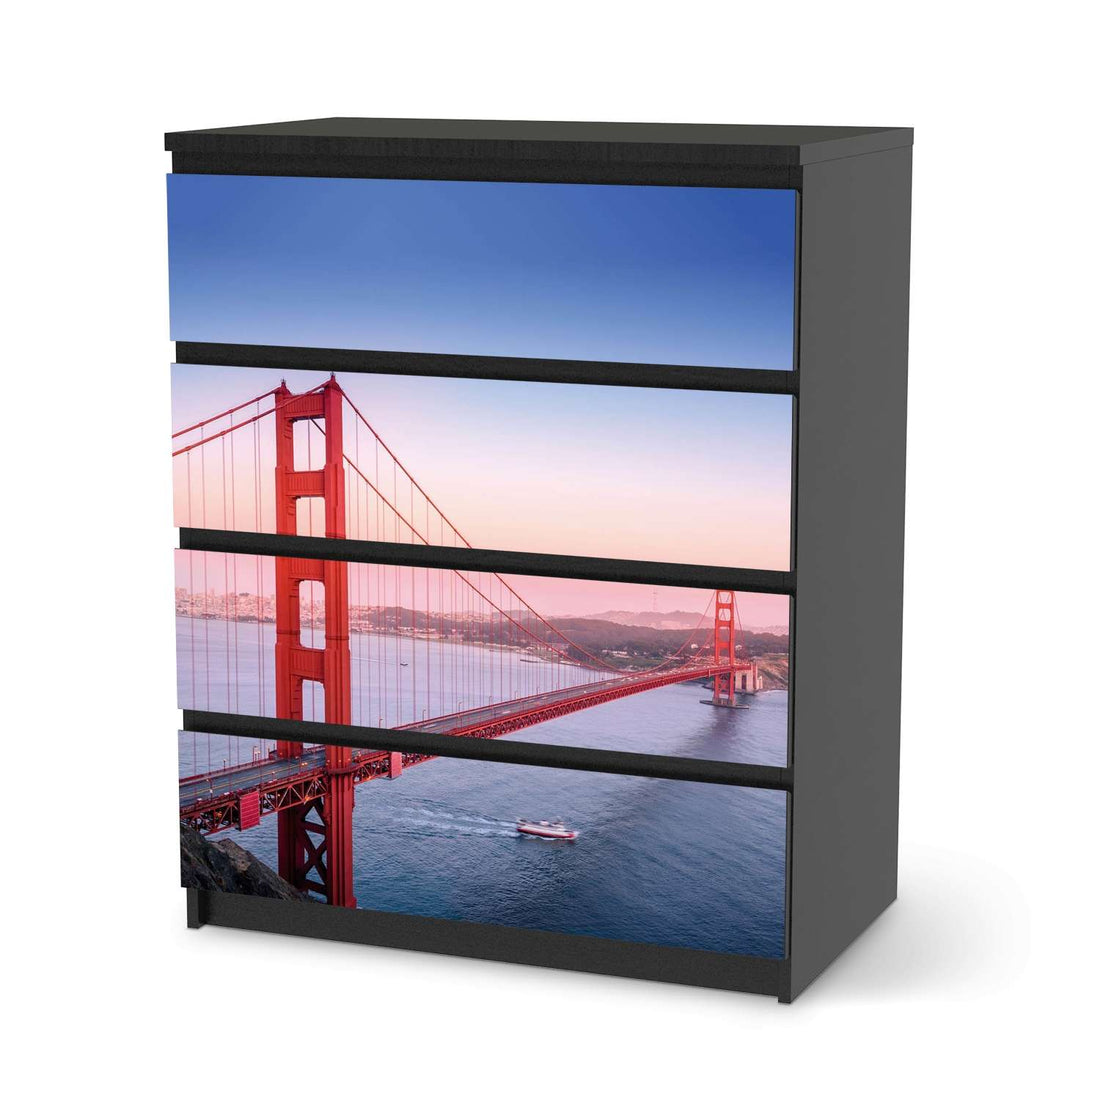 Folie für Möbel Golden Gate - IKEA Malm Kommode 4 Schubladen - schwarz